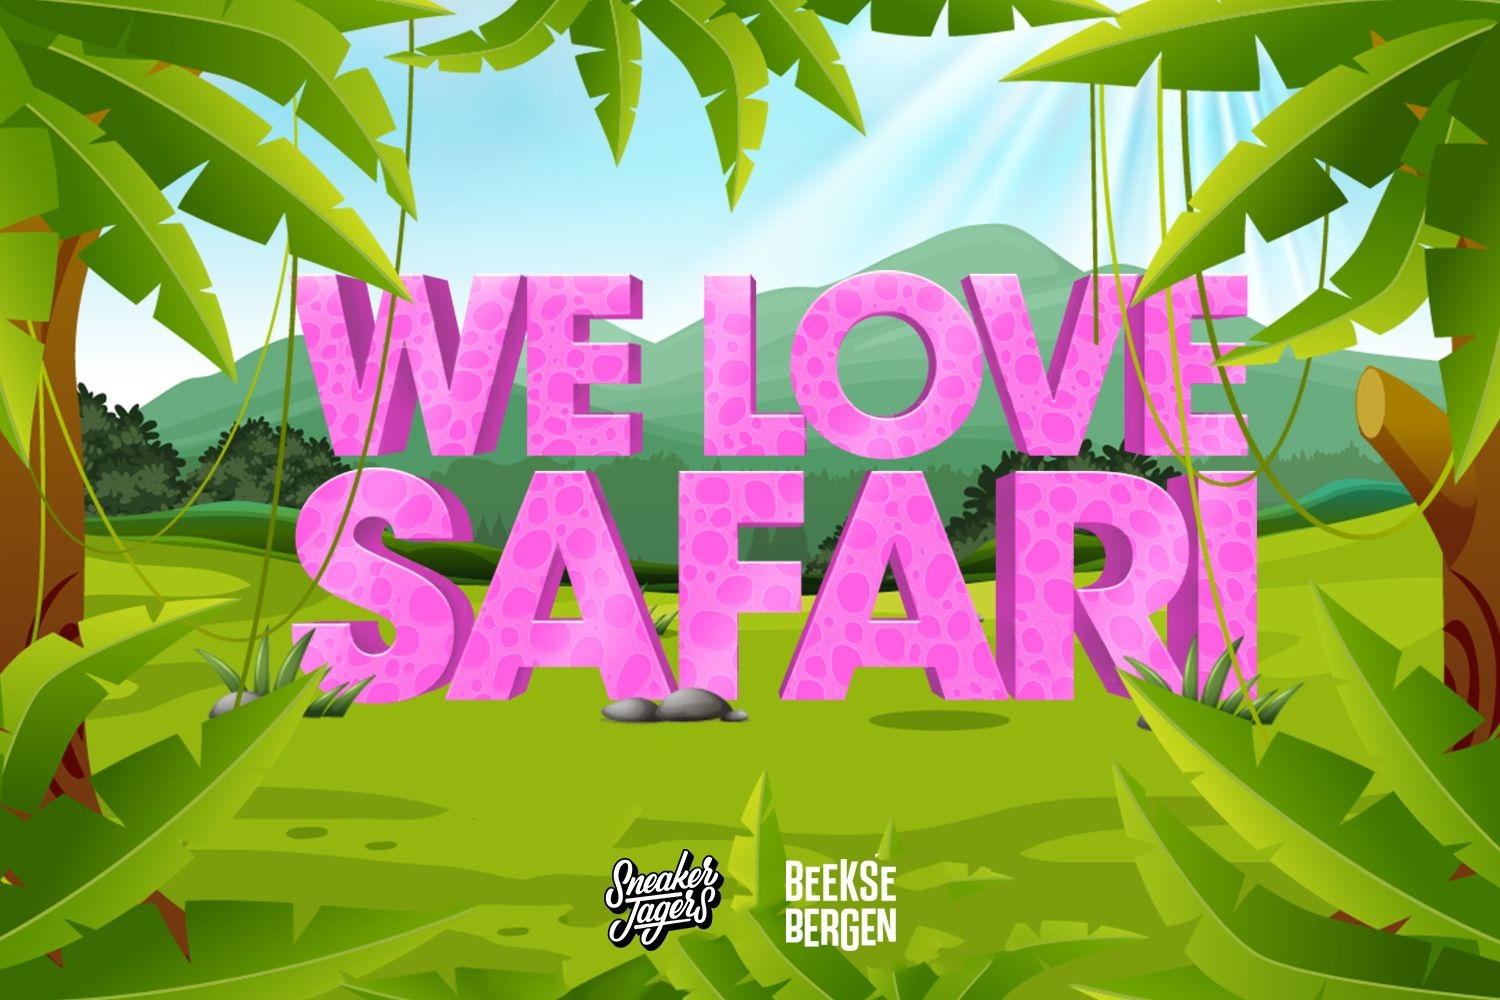 We love Safari - Sneakerjagers komt met een speciale actie met Safaripark Beekse Bergen